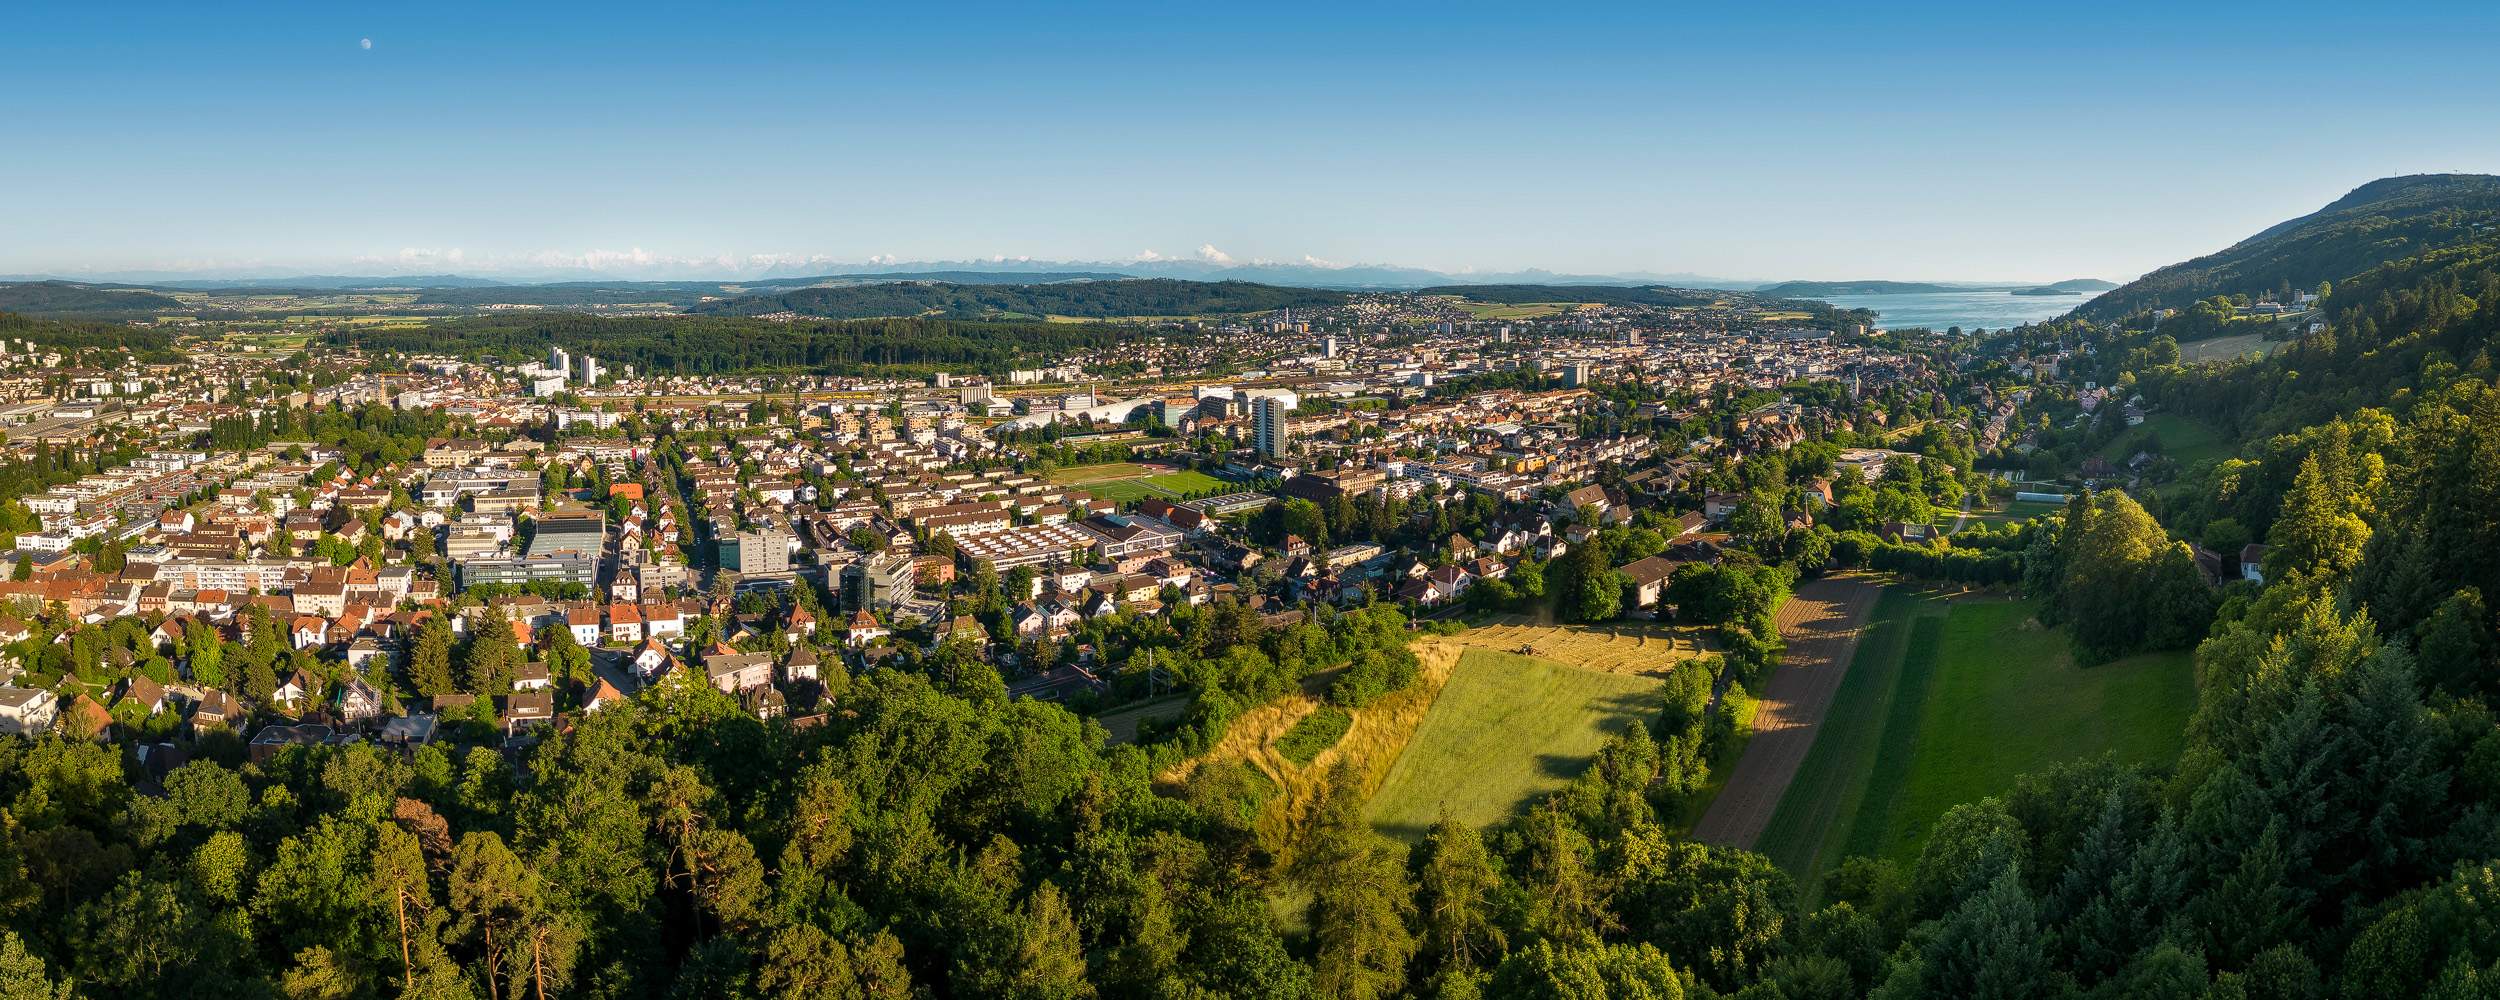 Stadt Biel-Bienne - Luftaufnahme